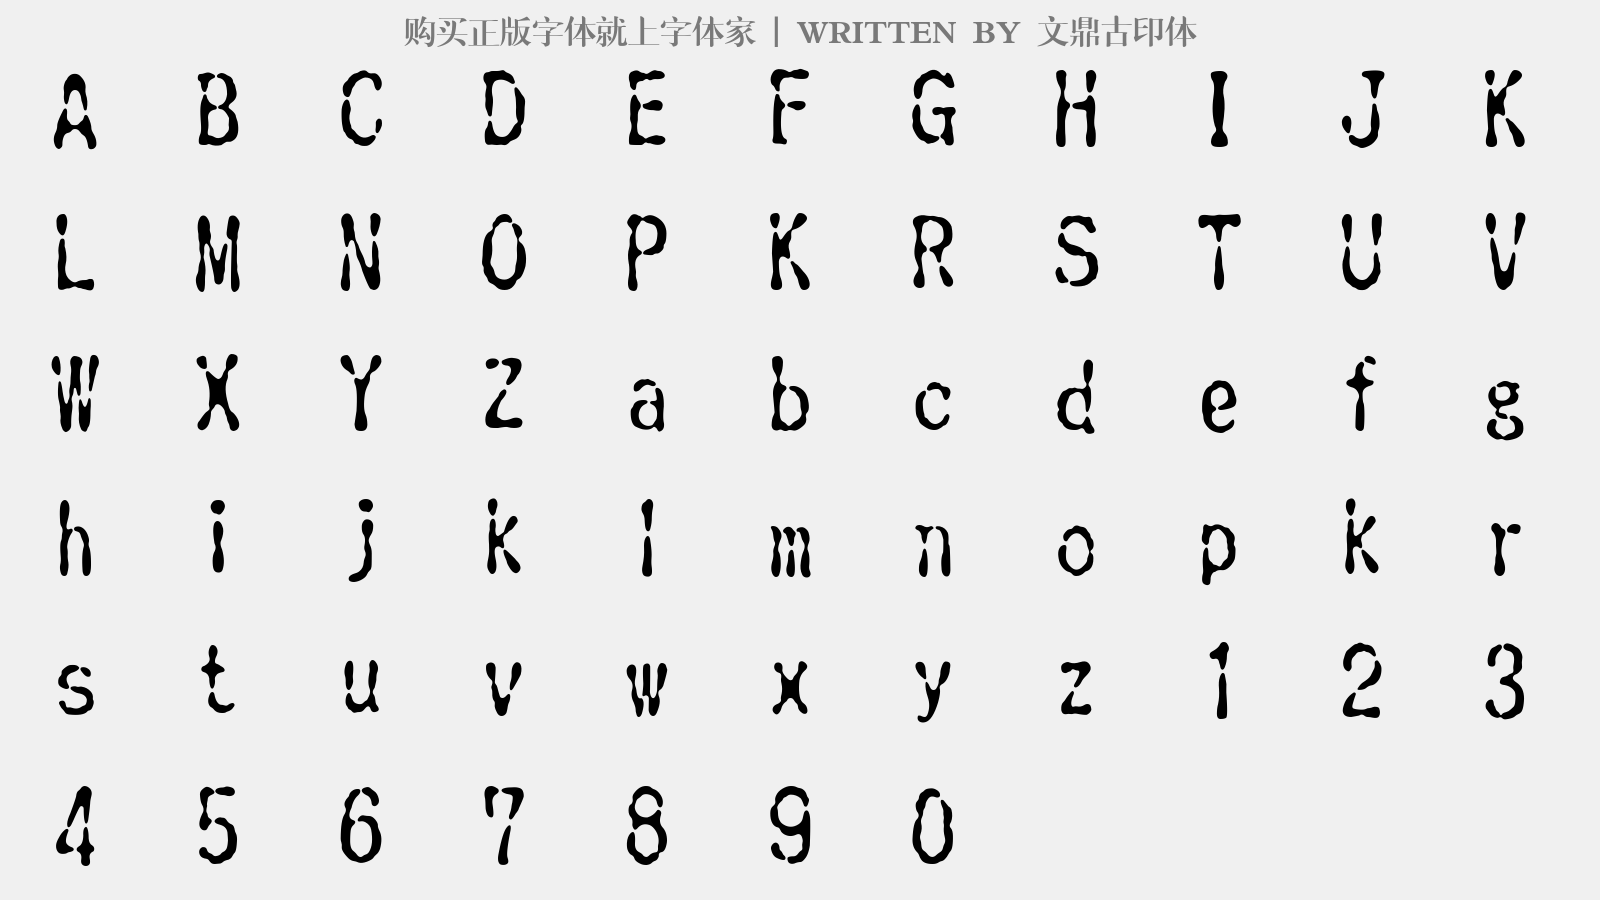 文鼎古印体 - 大写字母/小写字母/数字